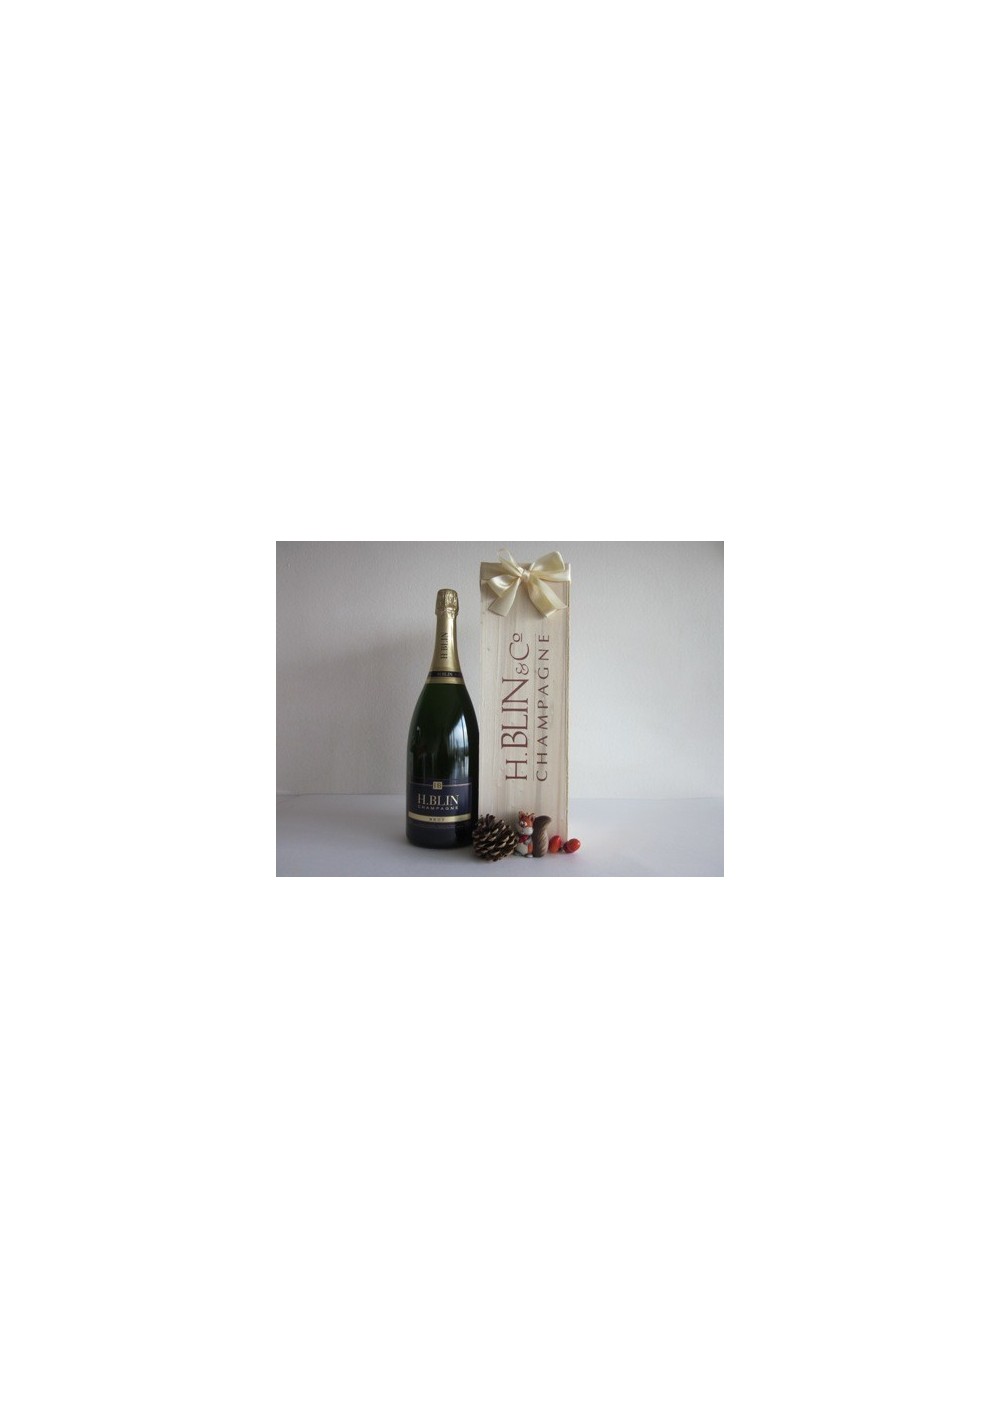 Champagne H. BLIN 9 liter